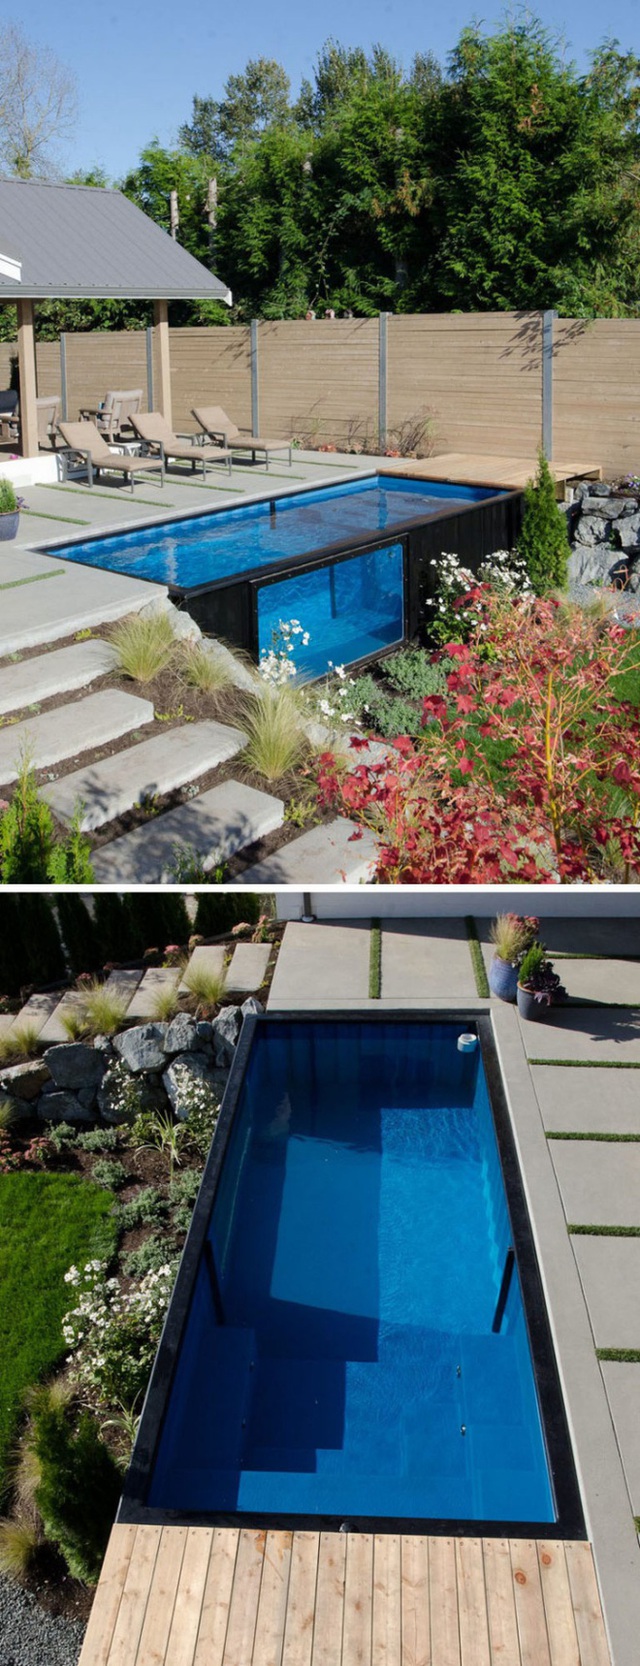 Bể bơi cotainer phù hợp với sân vườn nhỏ.